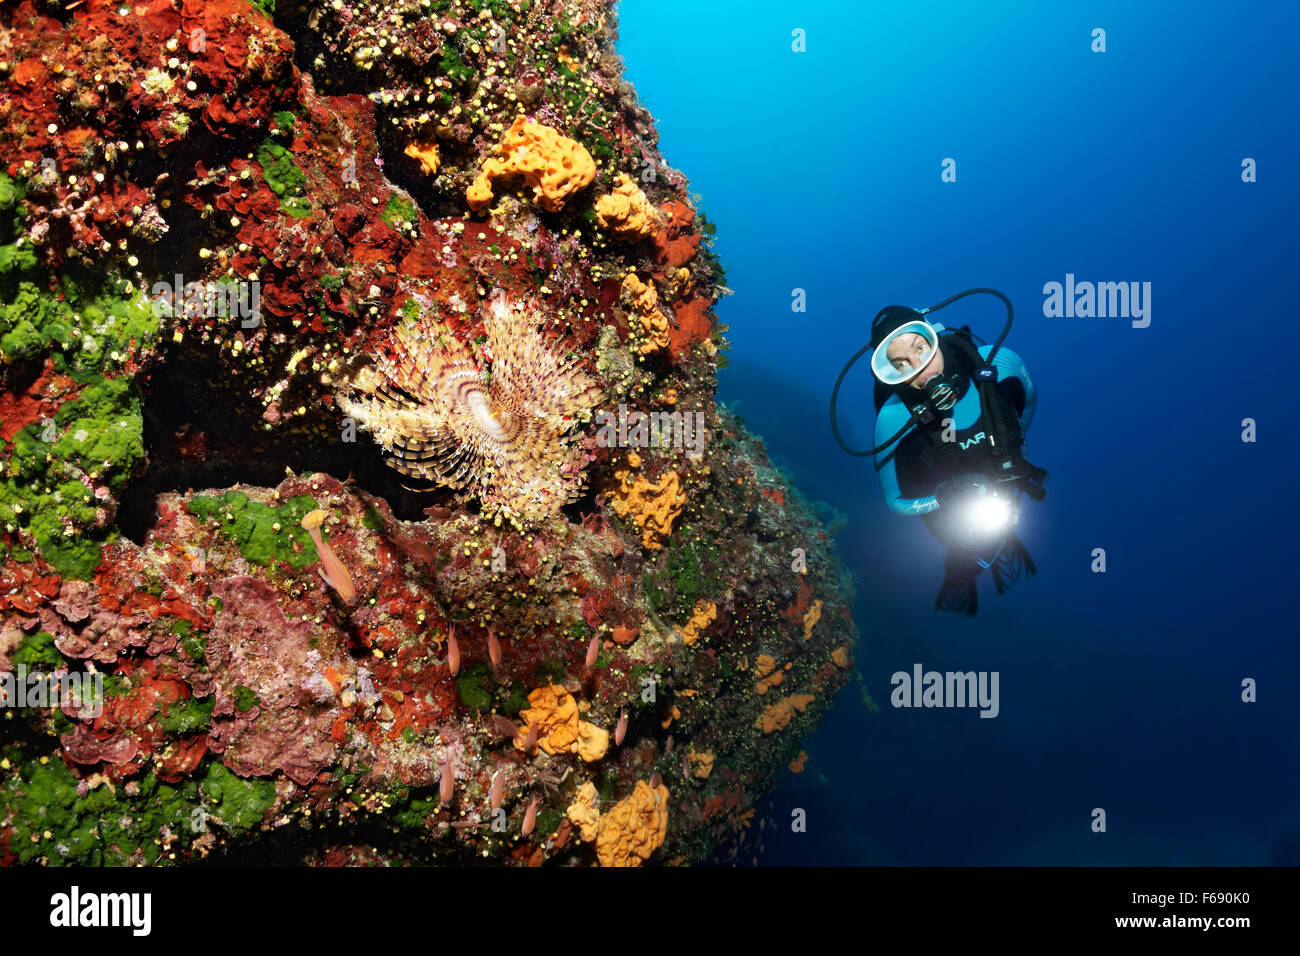 Taucher mit Lampe, Steilwand mit Bleistift Würmer (Sabella Spallanzani) auf Schwämmen (Polifera) und Sonnenuntergang Tasse Korallen wachsen Stockfoto